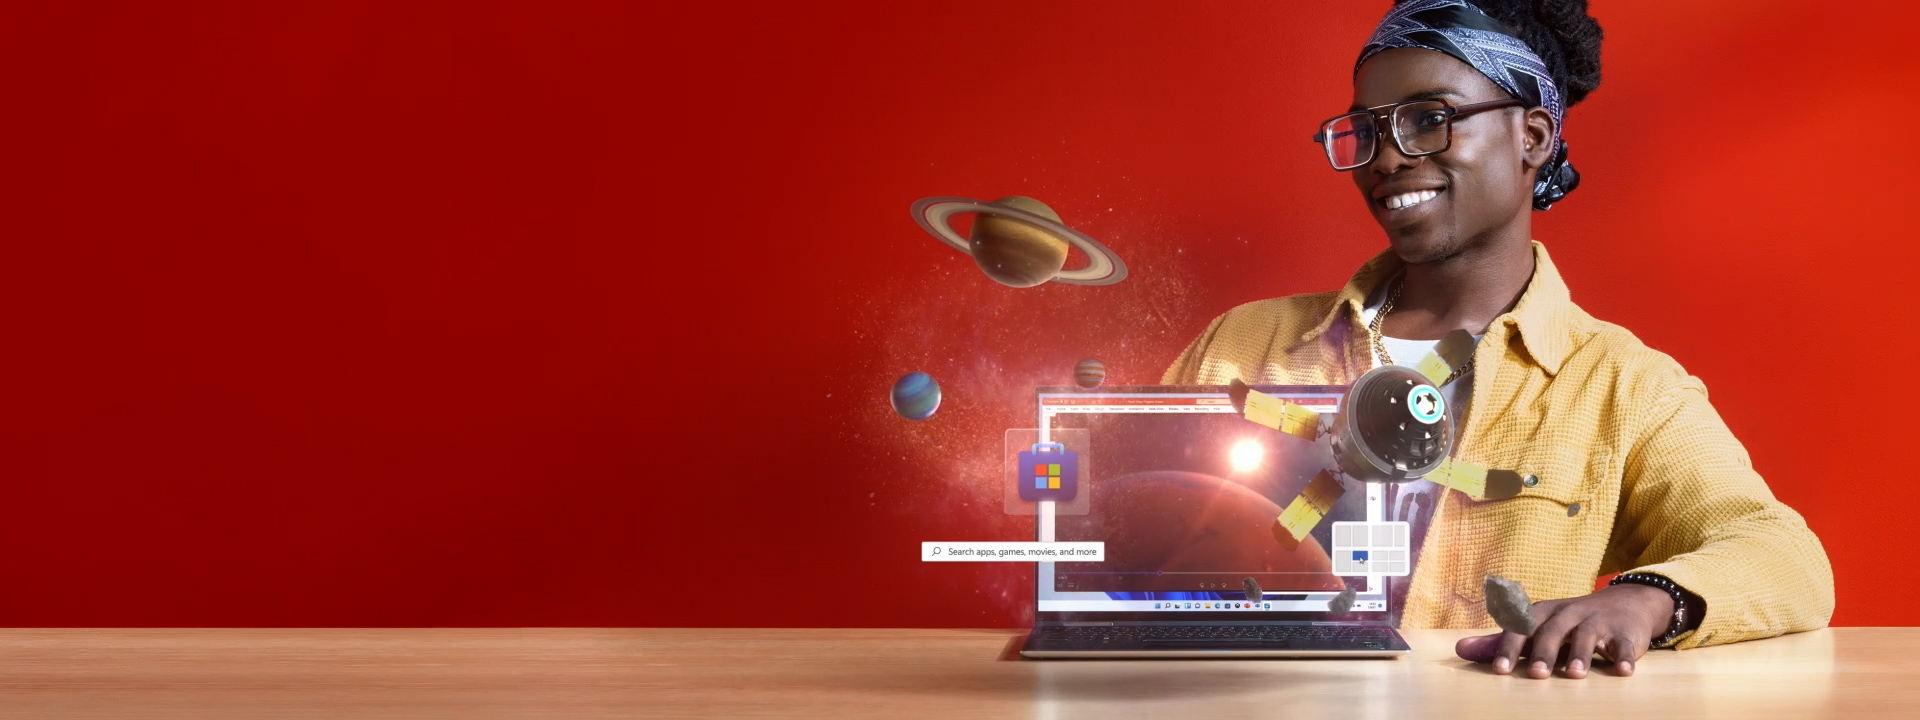 Ein Mann in einer gelben Jacke sitzt an einem Schreibtisch vor einem Laptop und sieht sich ein Video an, das im Weltraum spielt. Digitale Elemente wie das Windows Store-Symbol und Weltraumobjekte erscheinen wie durch Magie auf dem Bildschirm.